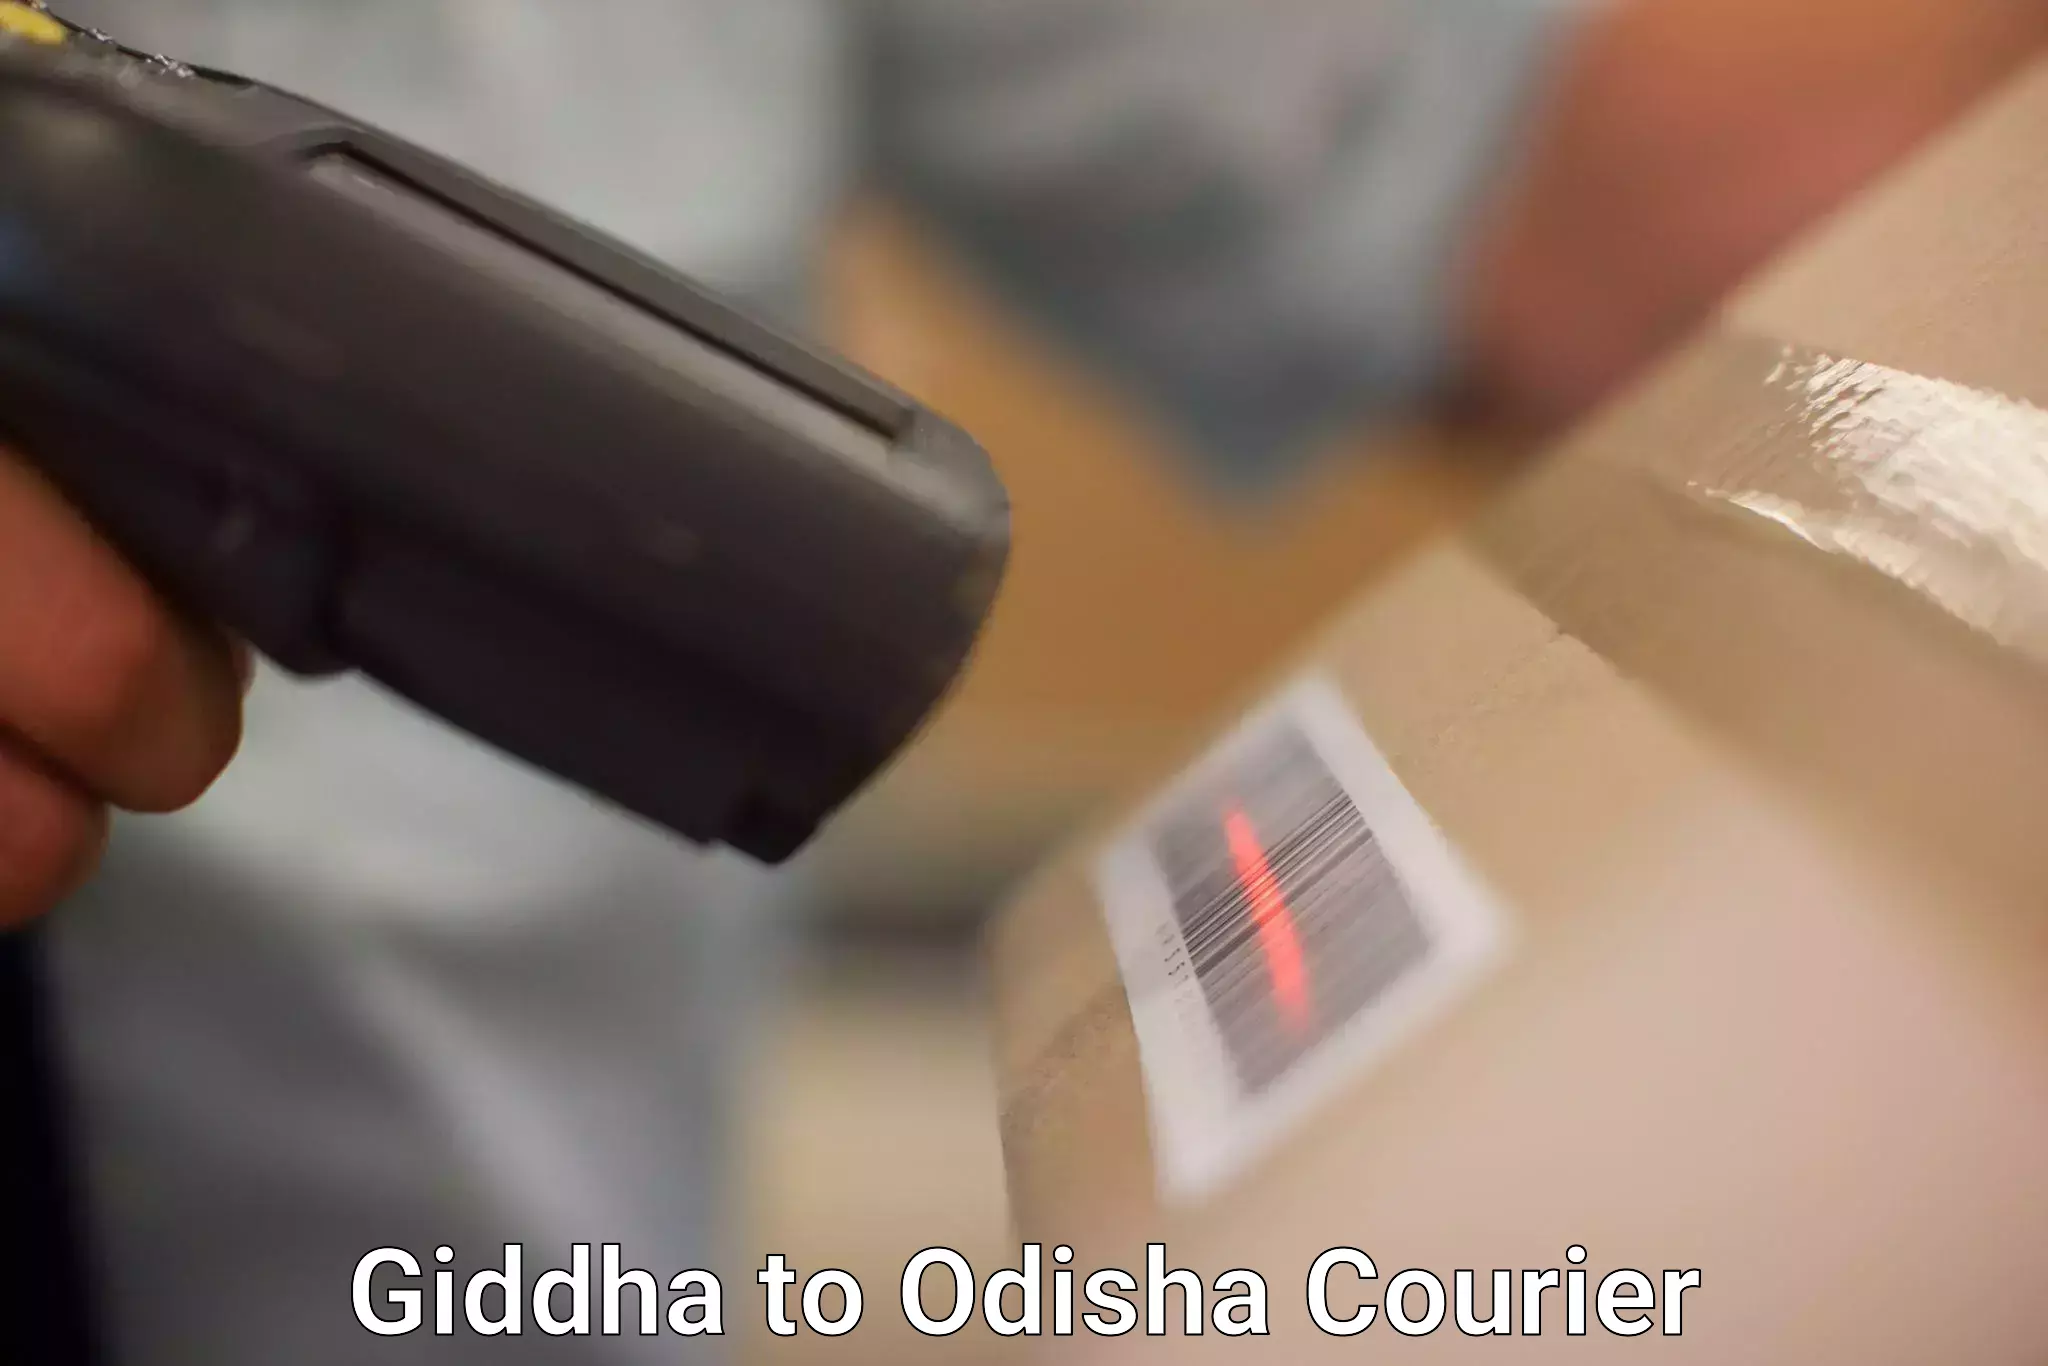 Reliable shipping partners Giddha to Odisha